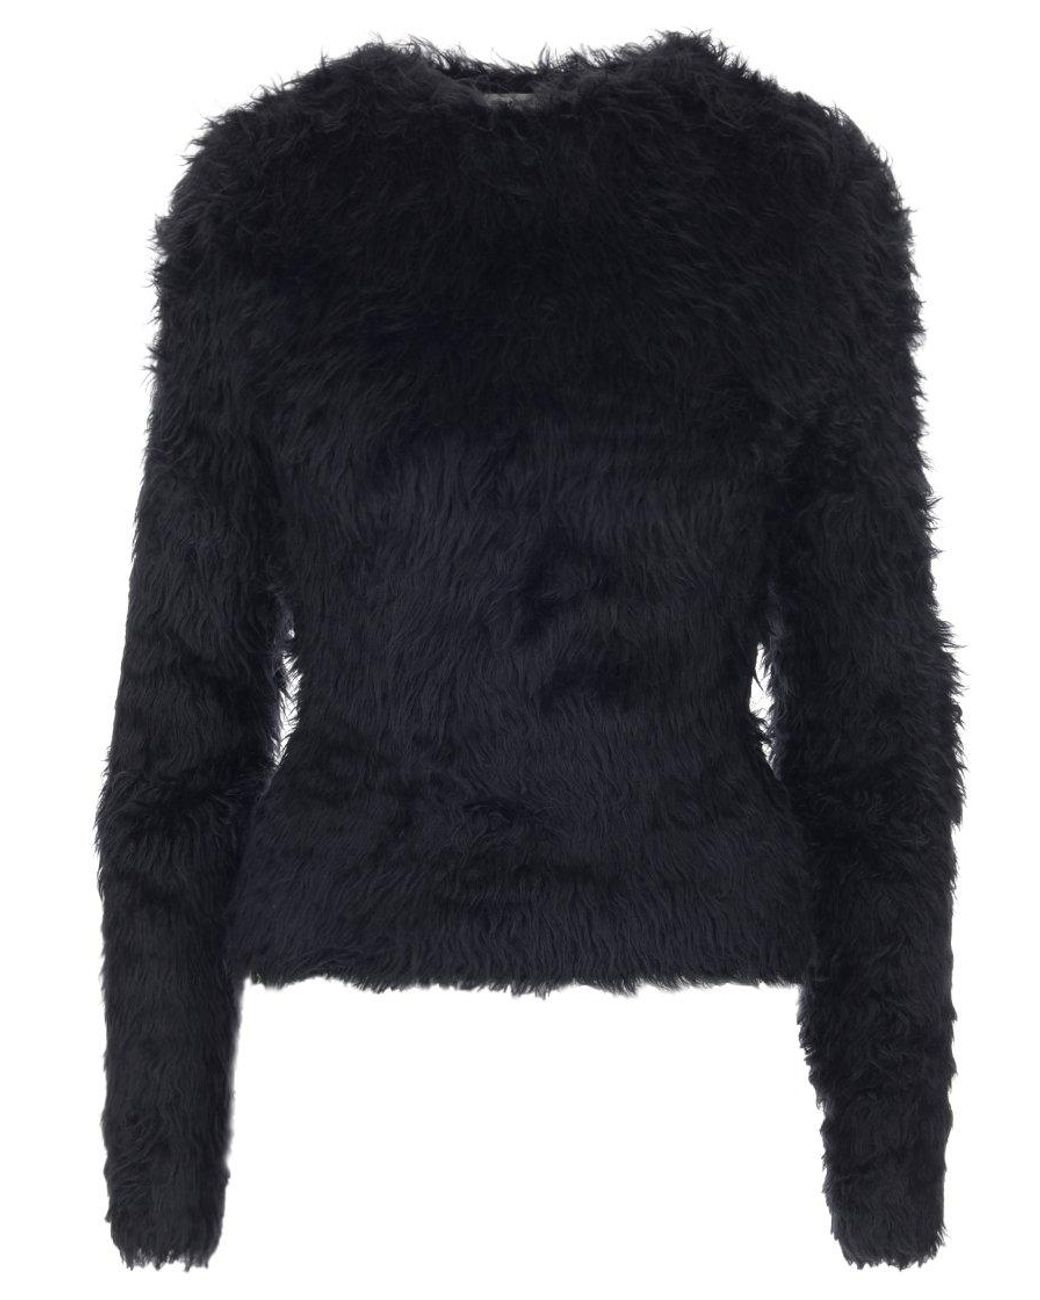 Balenciaga Fluffy Faux Fur Sweater in Black | Lyst